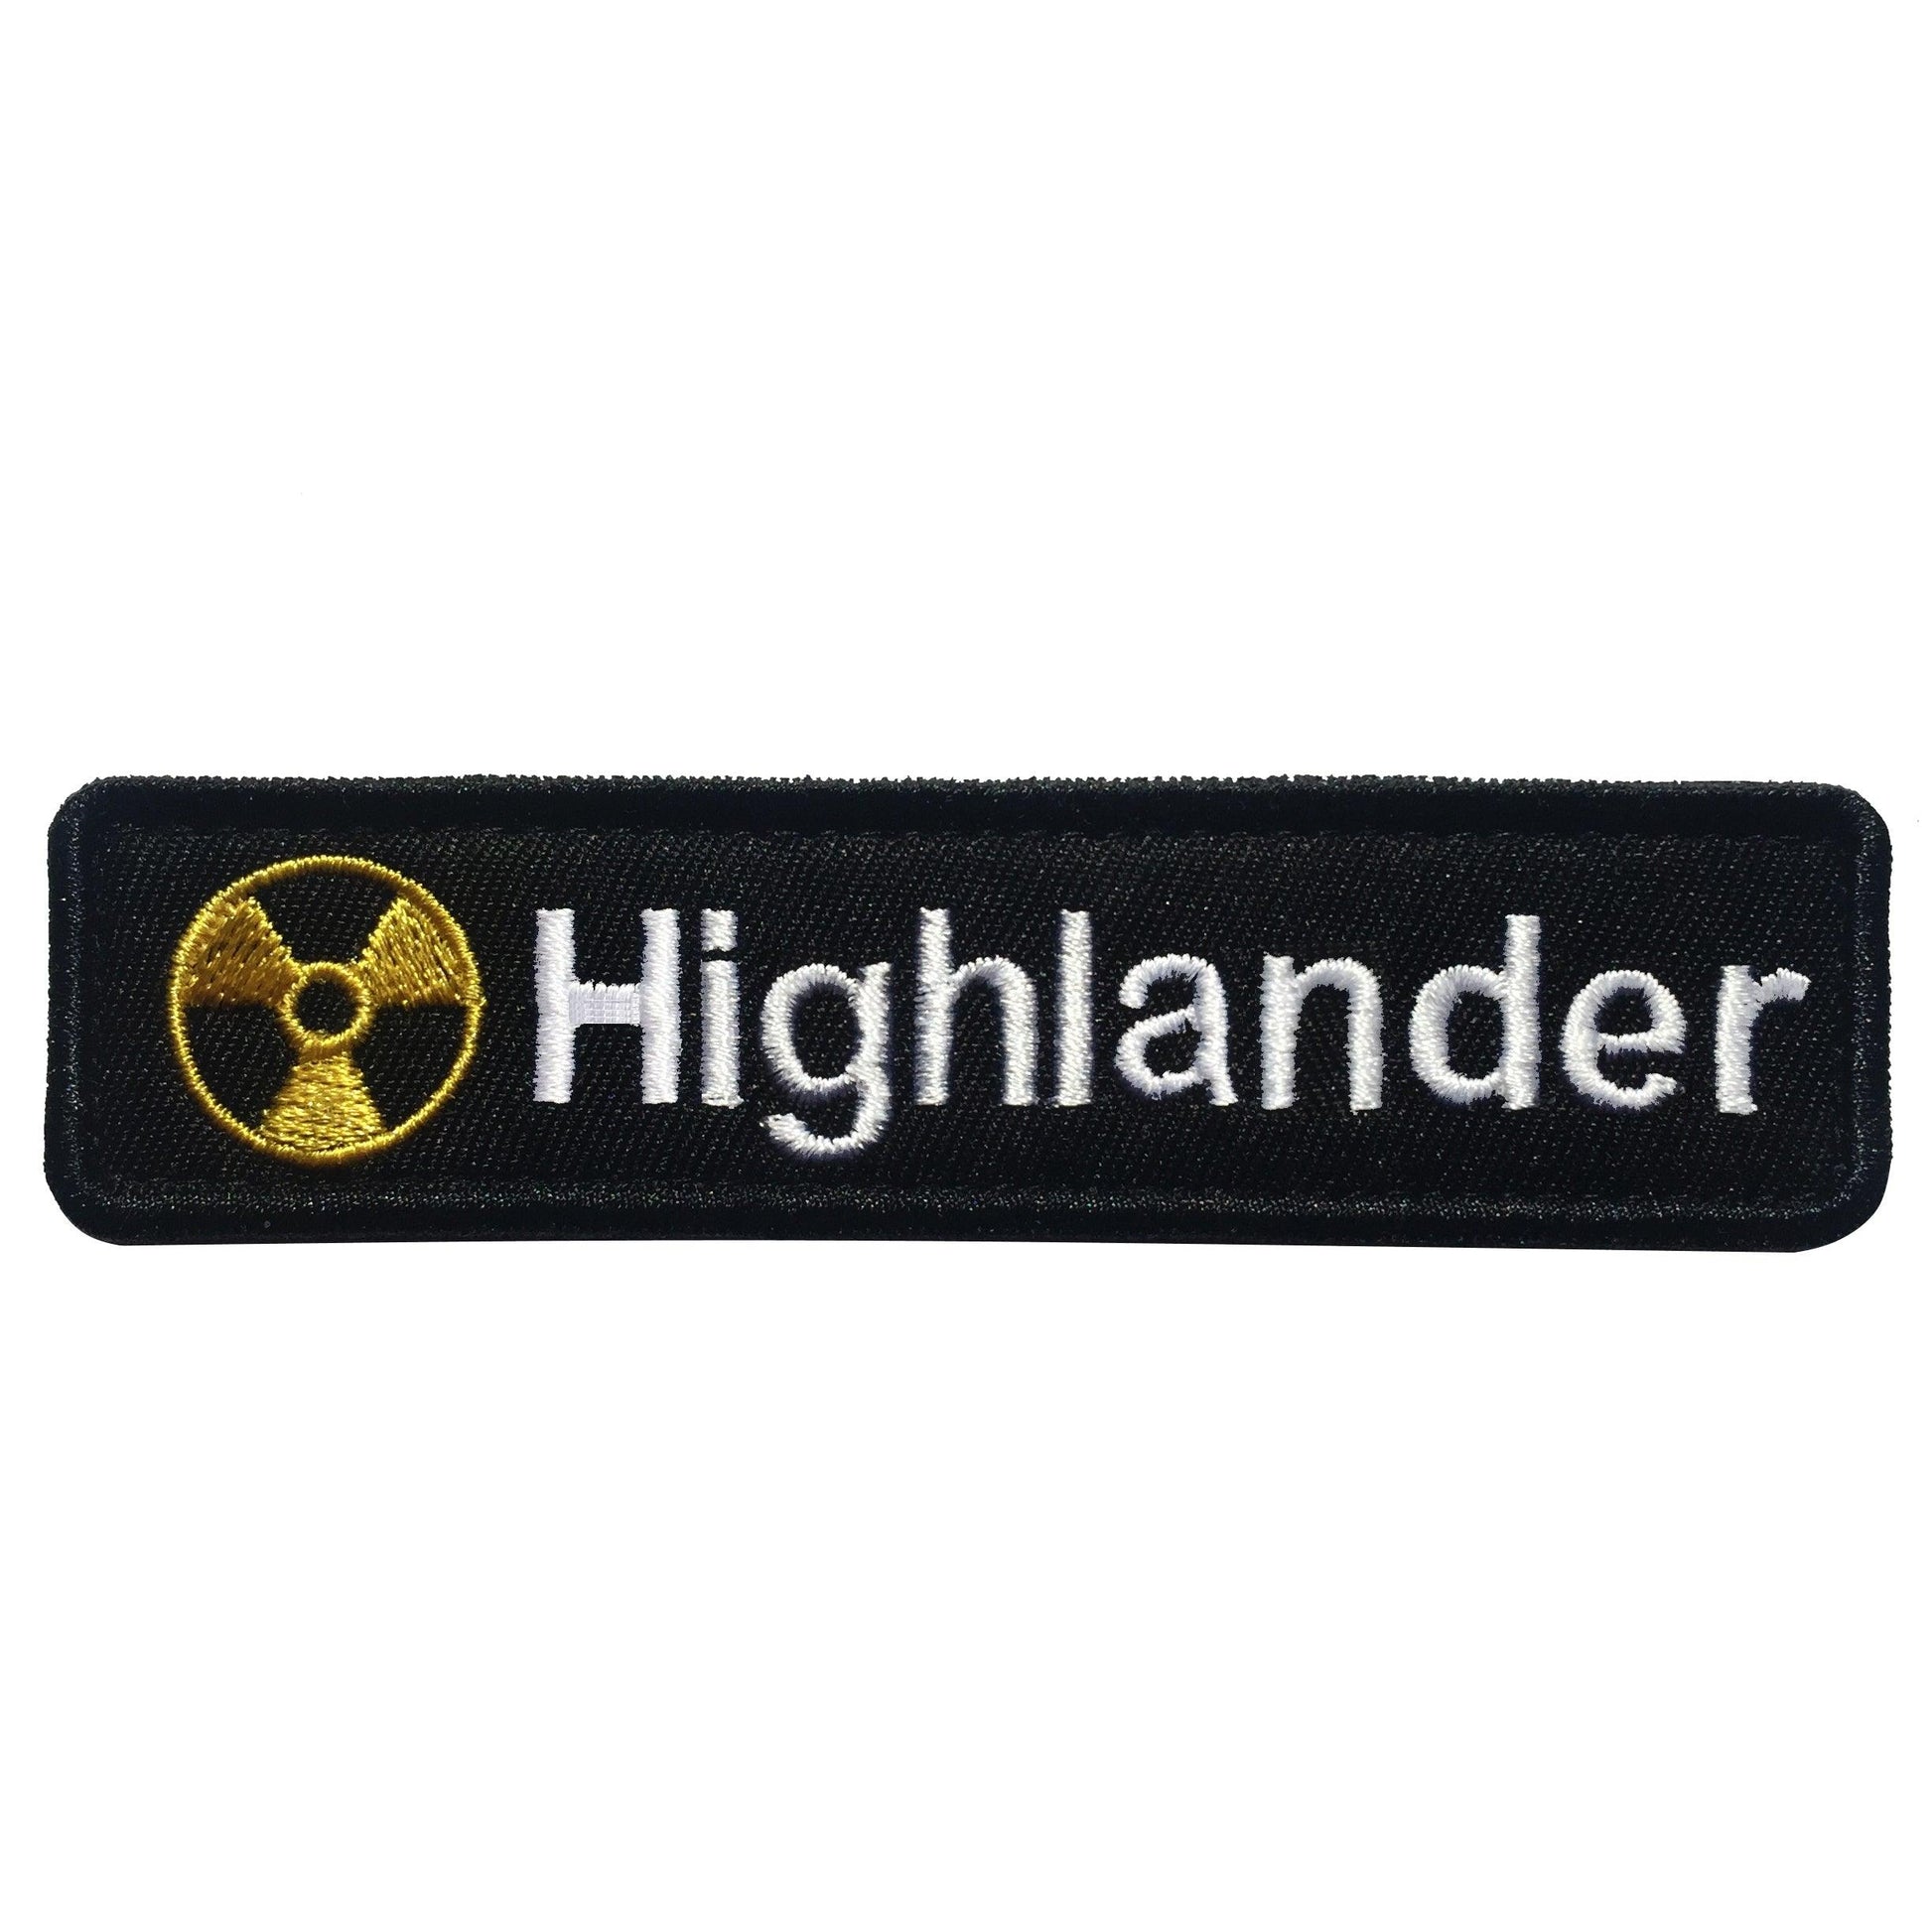 Patch brodé personnalisé Airsoft avec signe radioactif jaune patch militaire patch tactique brodé personnalisable patch highlander Airsoft